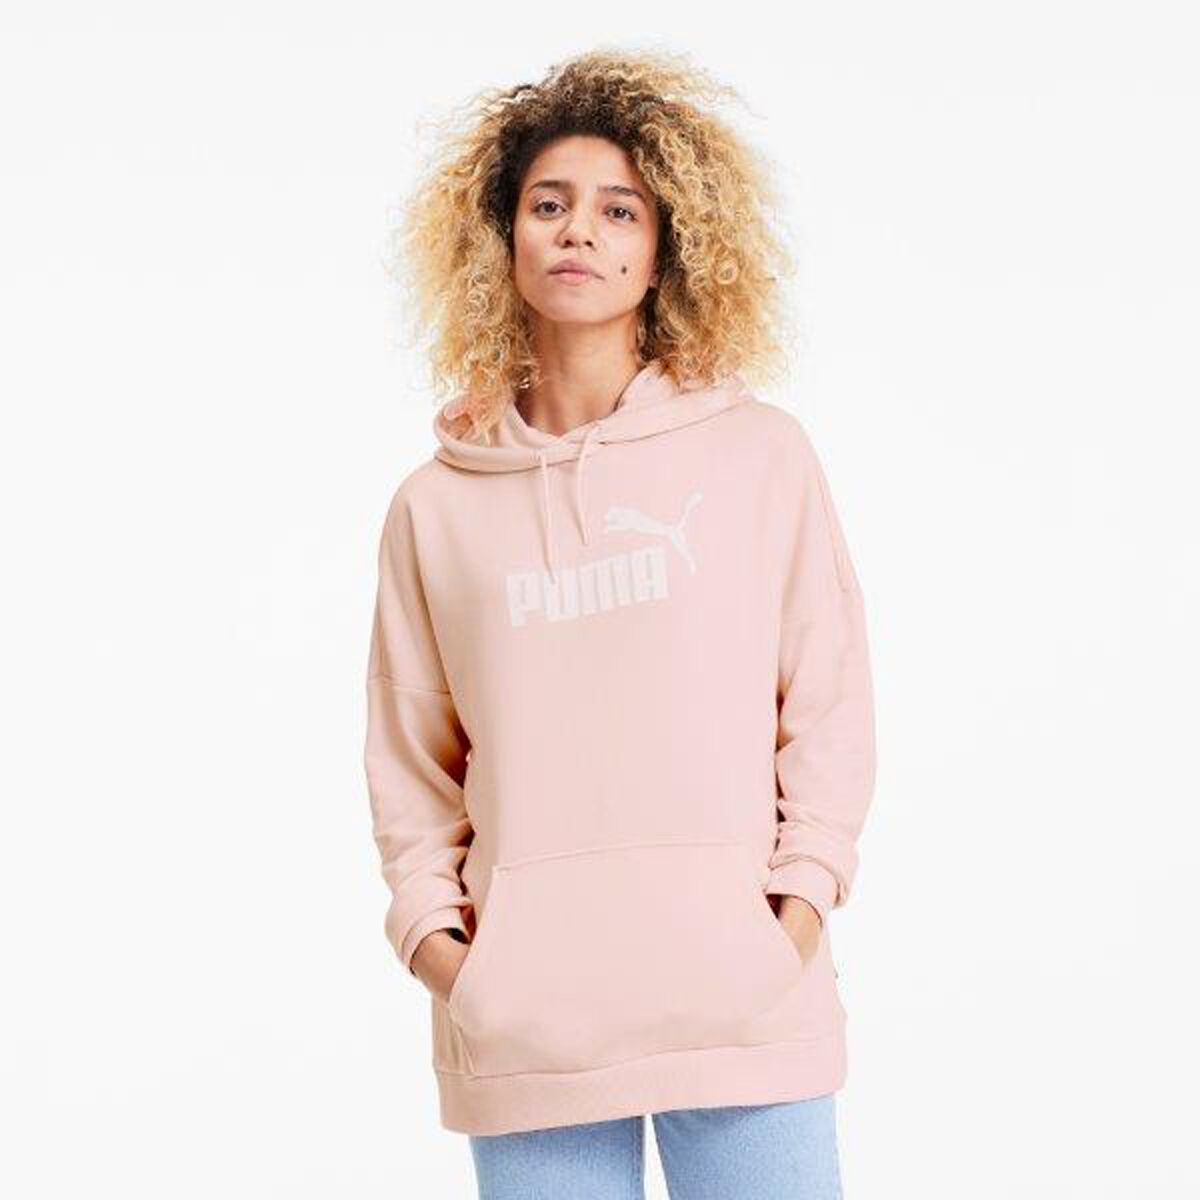 puma hoodie womens pink